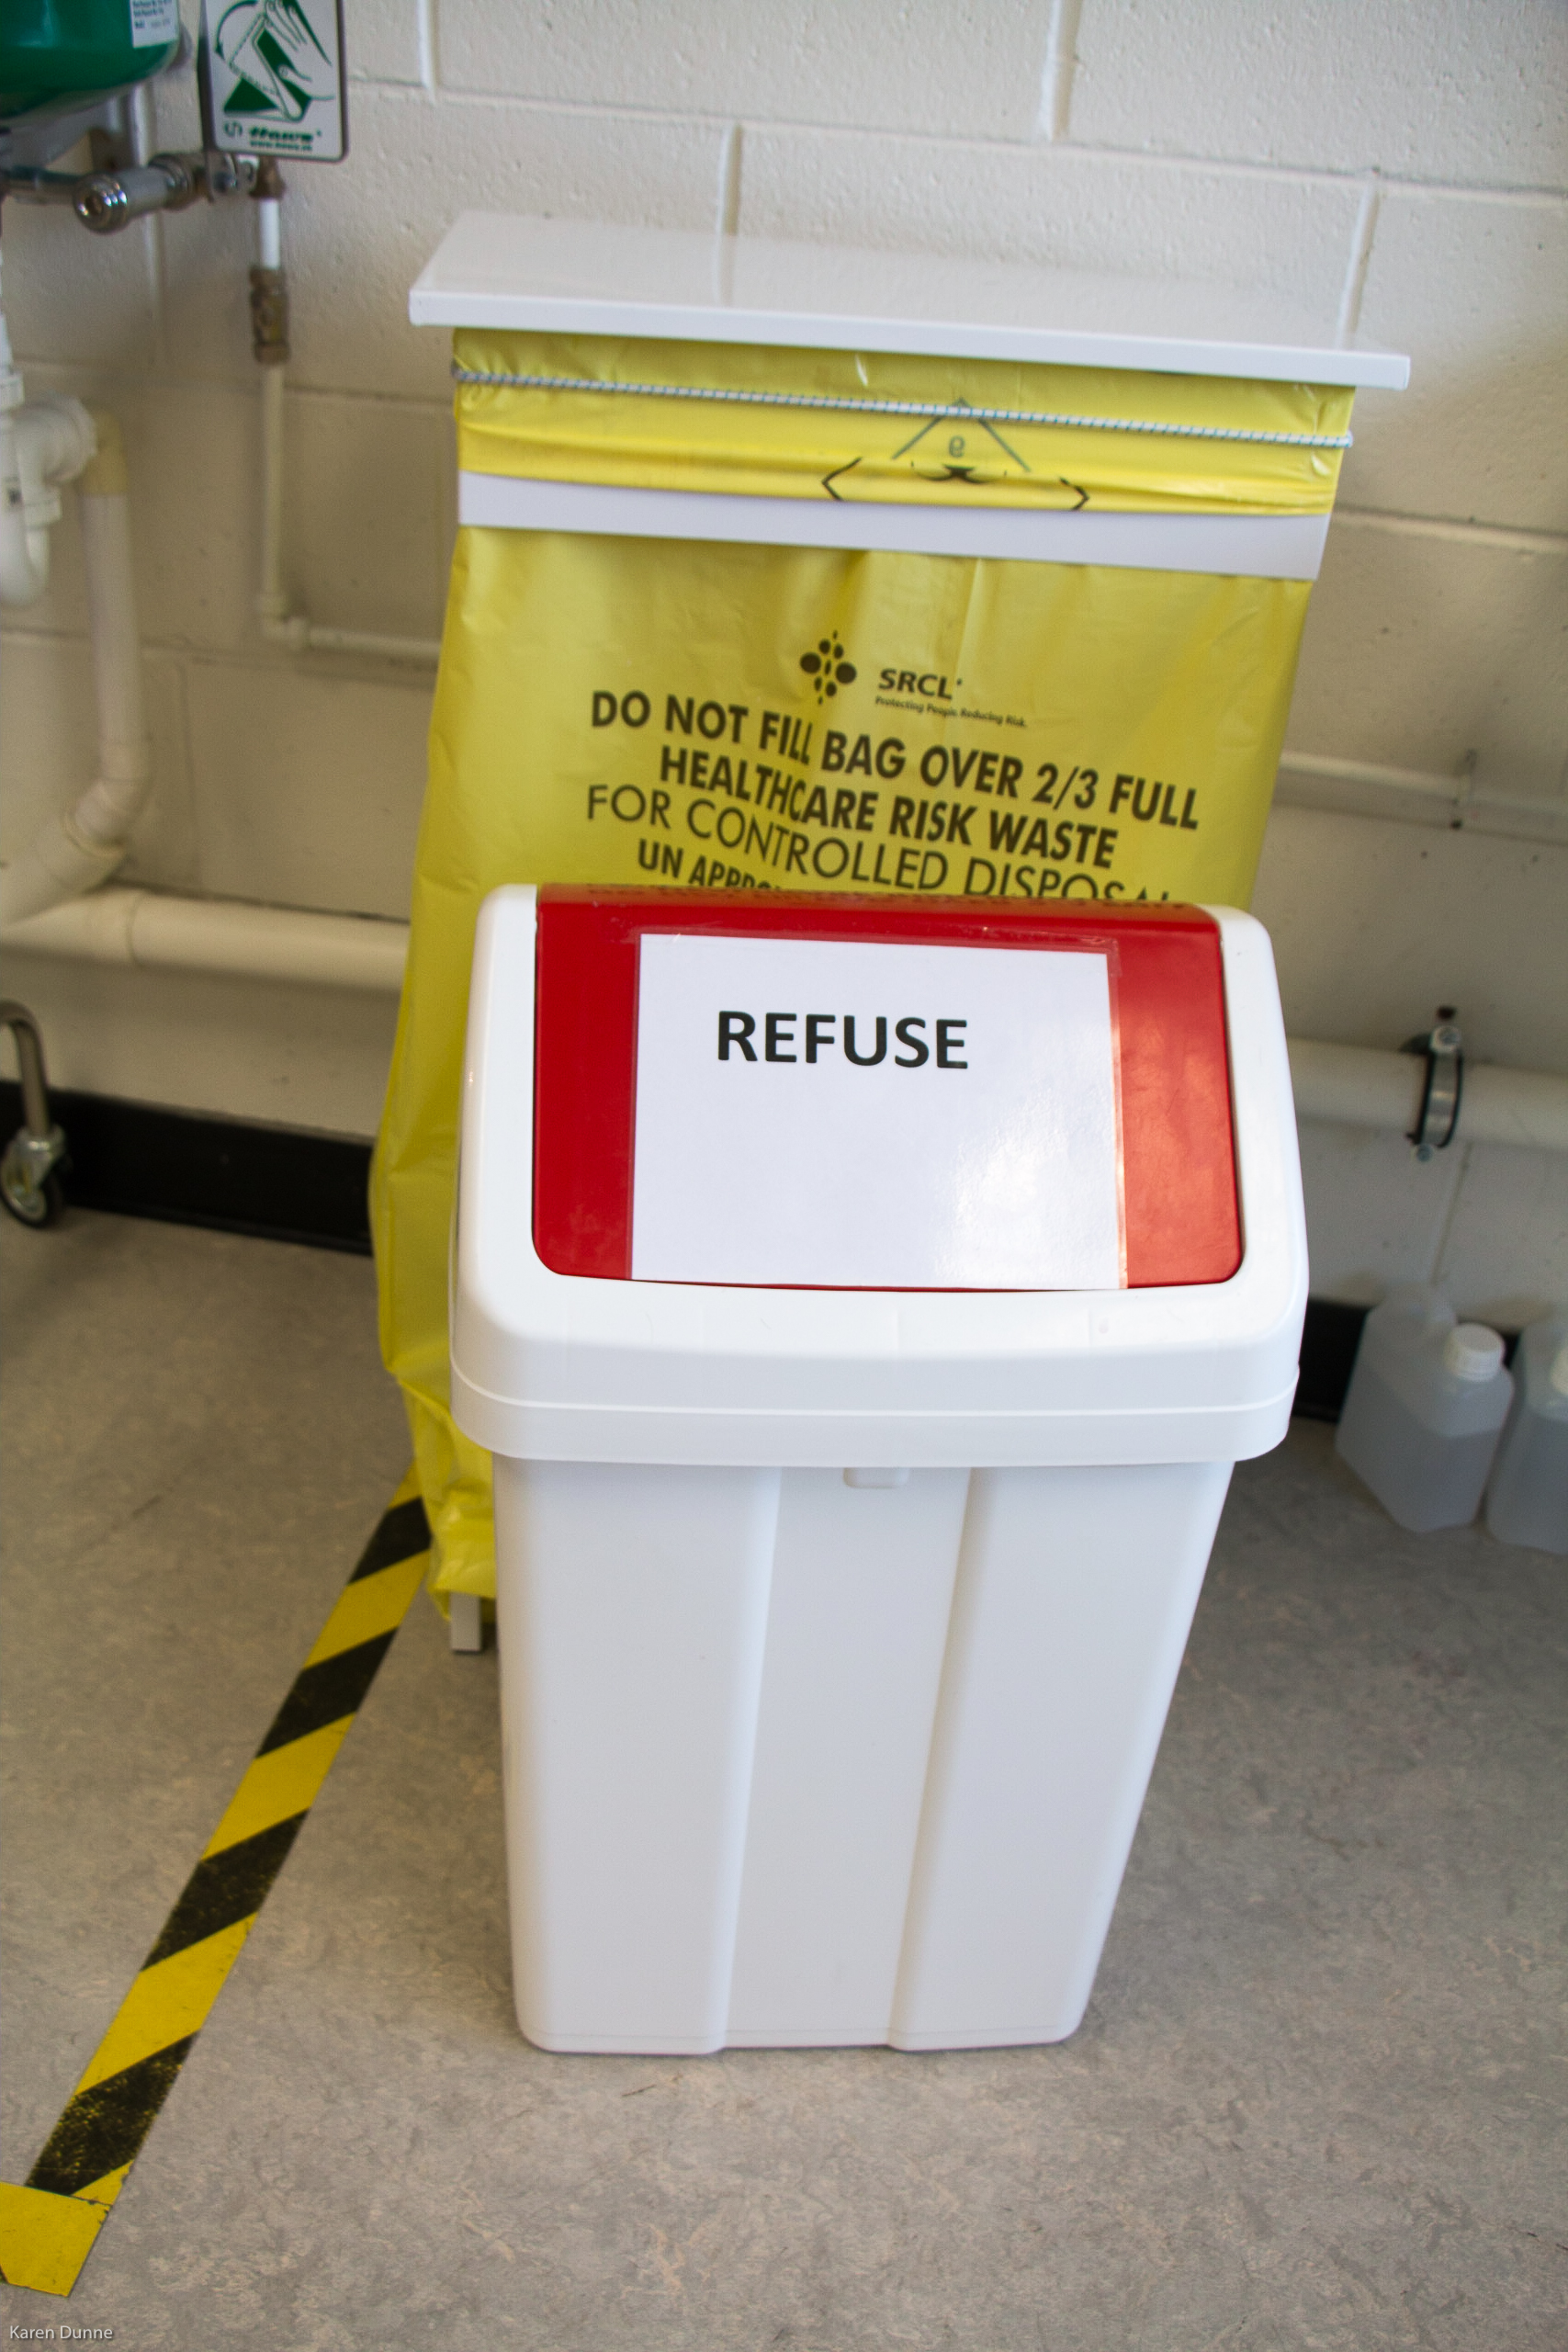 Refuse & soft clinical waste bins